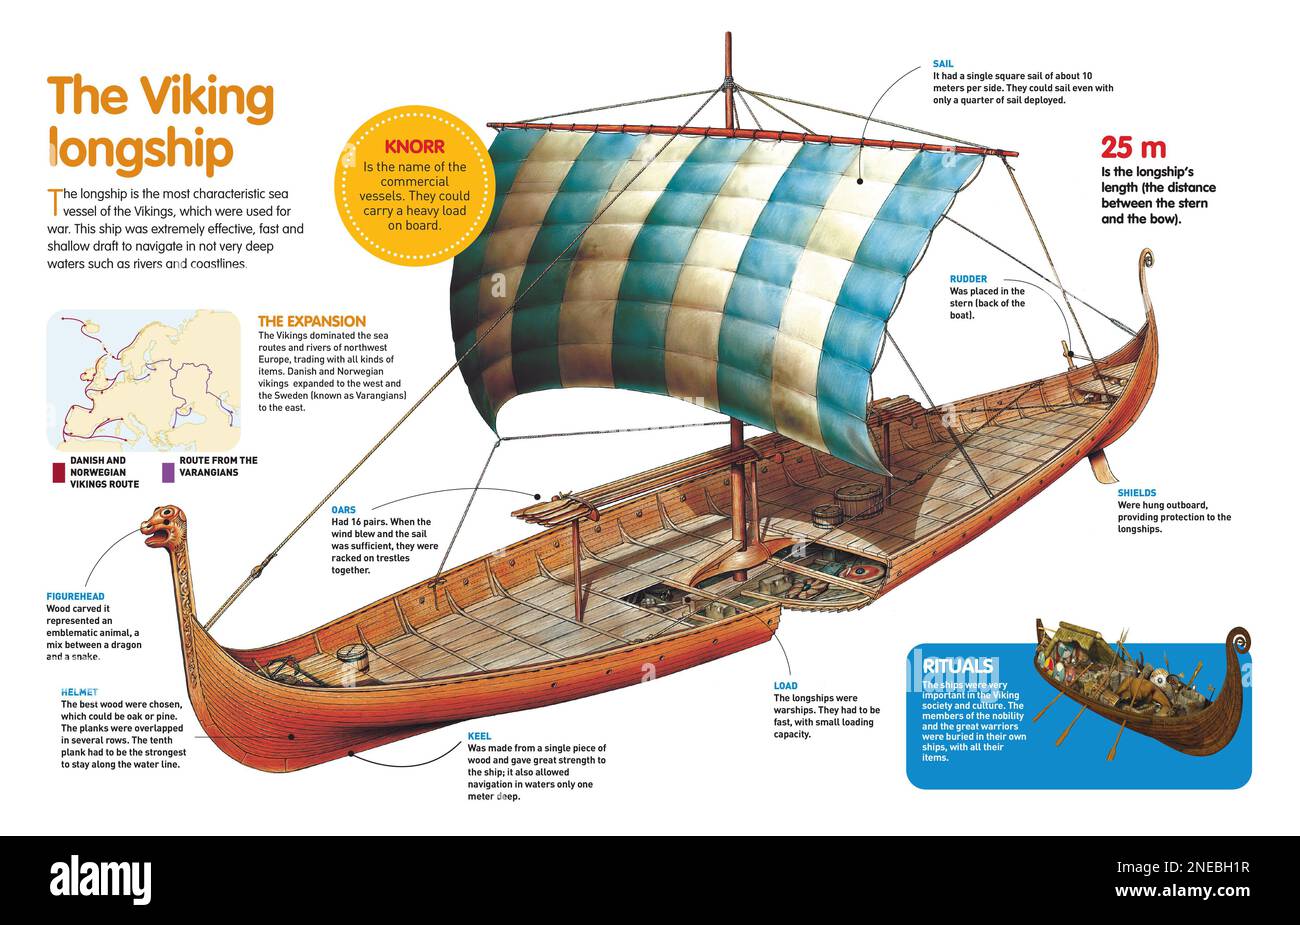 Infografik über das Longship, das charakteristischste Schiff der Wikinger, und ihre Expansion im Nordosten Europas im Mittelalter. [QuarkXPress (.qxp); Adobe InDesign (.indd); QuarkXPress (.qxd); 4960 x 3188]. Stockfoto